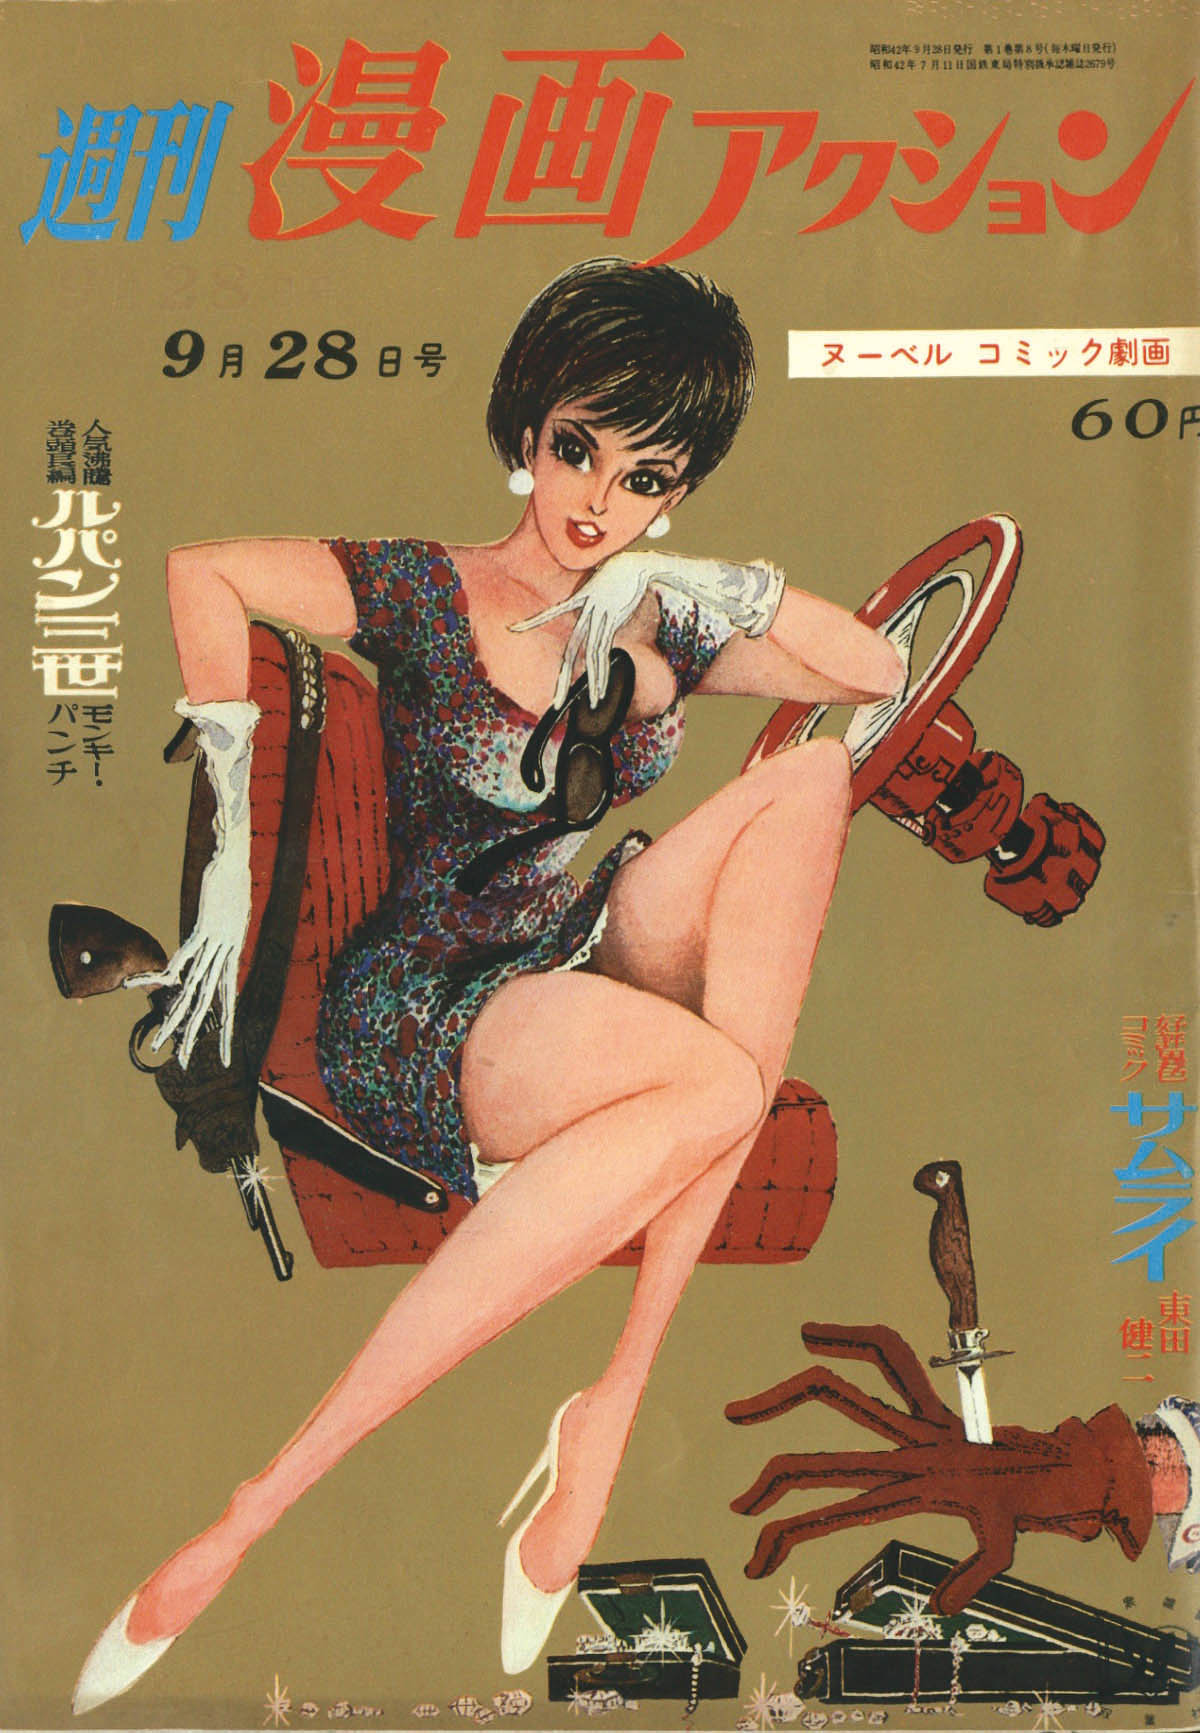 週刊漫画アクション1967(S42)09.28